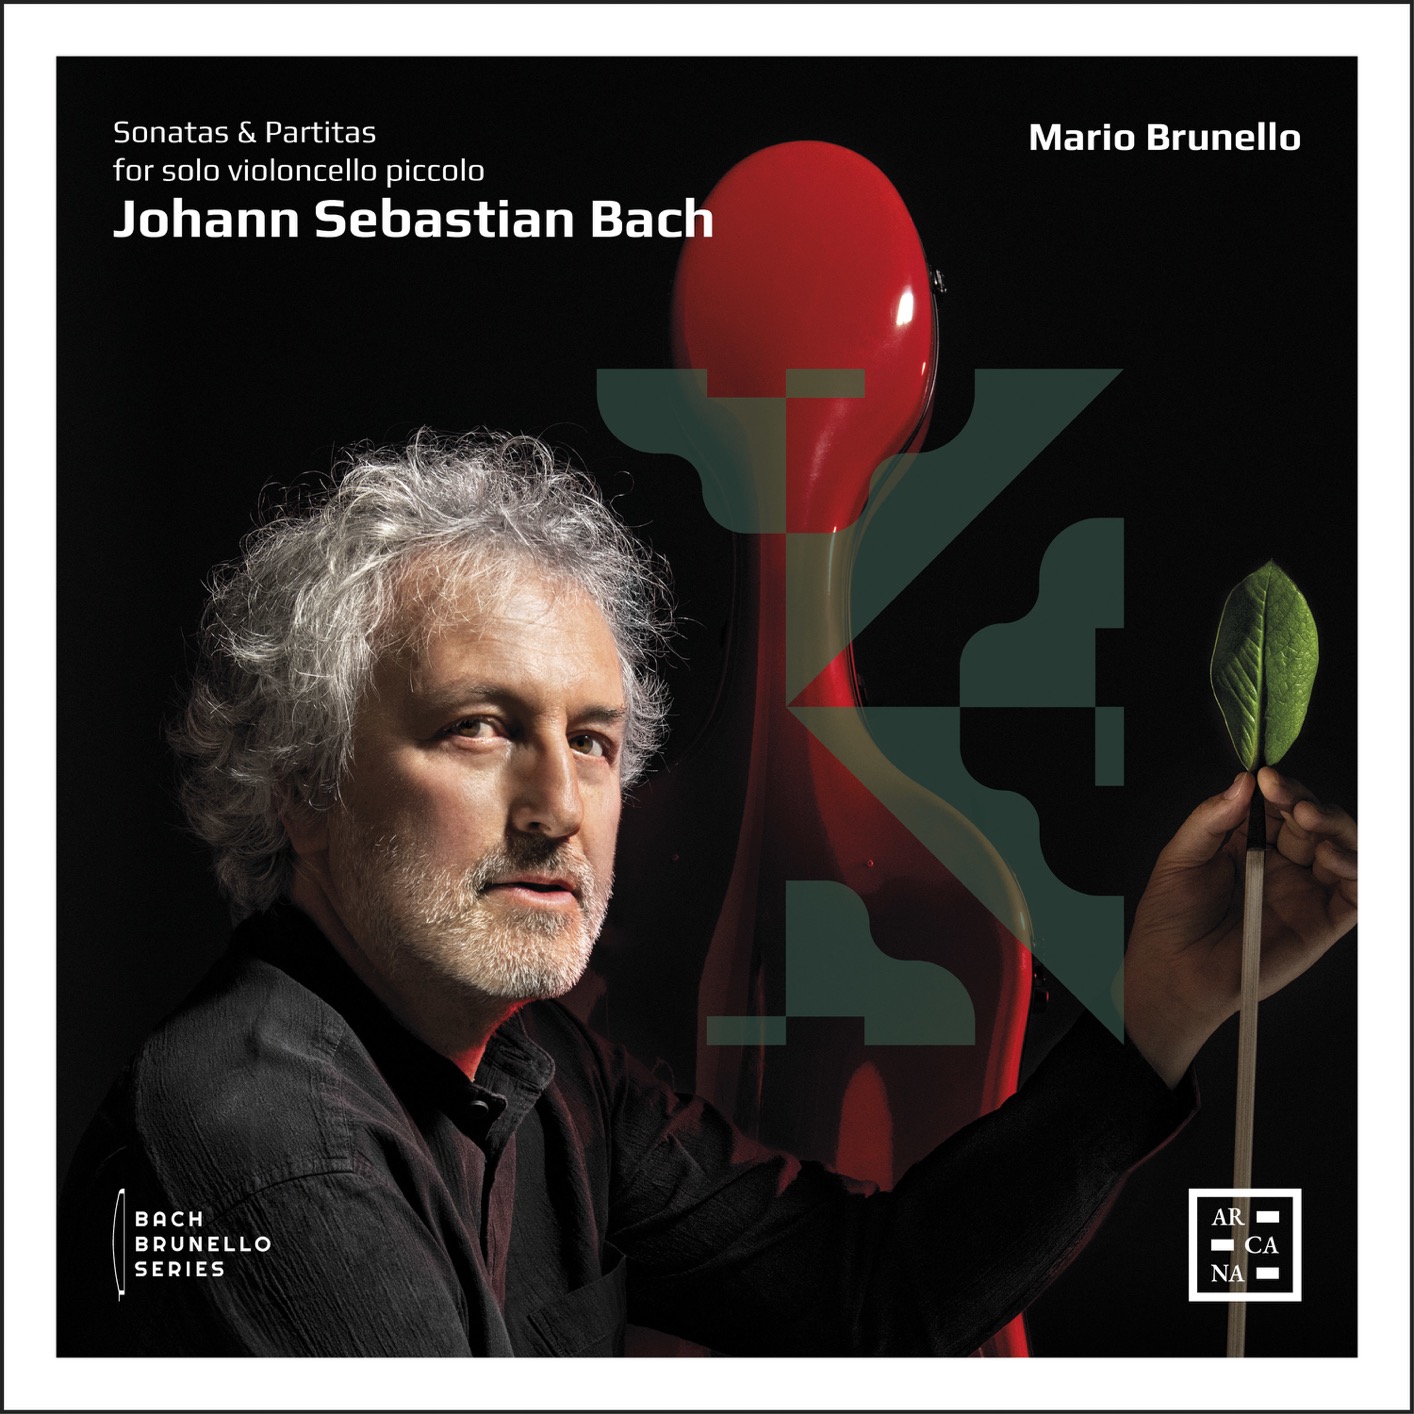 Mario Brunello - Bach: Sonatas and Partitas for Solo Violoncello Piccolo (2019) [FLAC 24bit/96kHz]